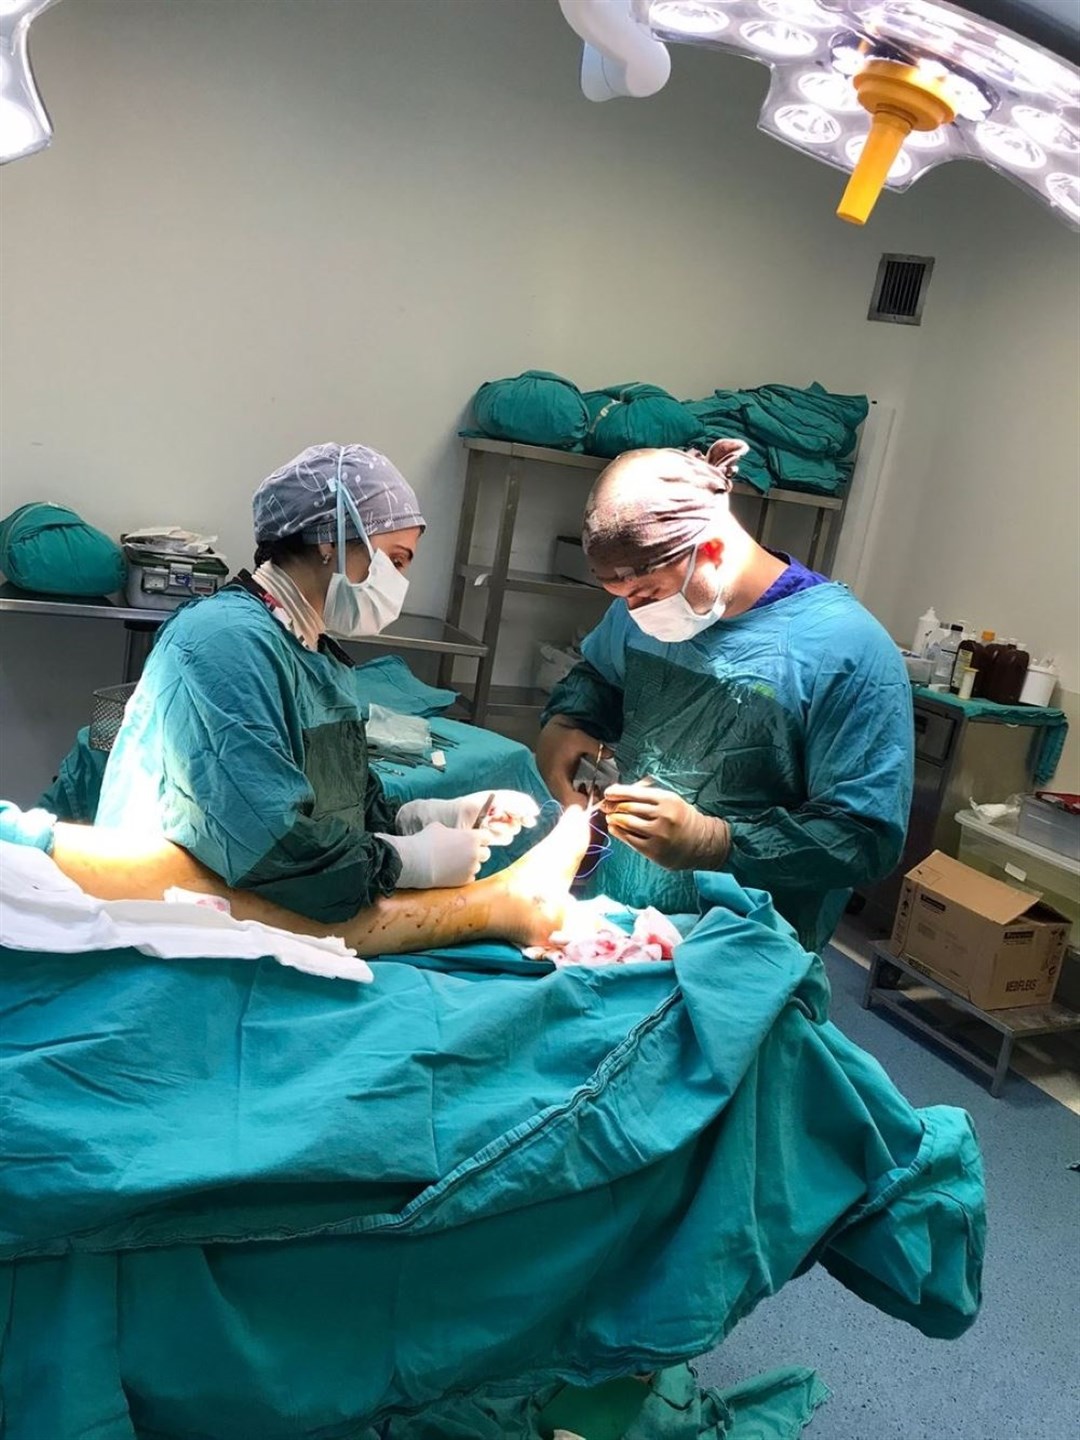 Mr Dirlik and his assistant performing a surgery (Noyan Dirlik/PA)